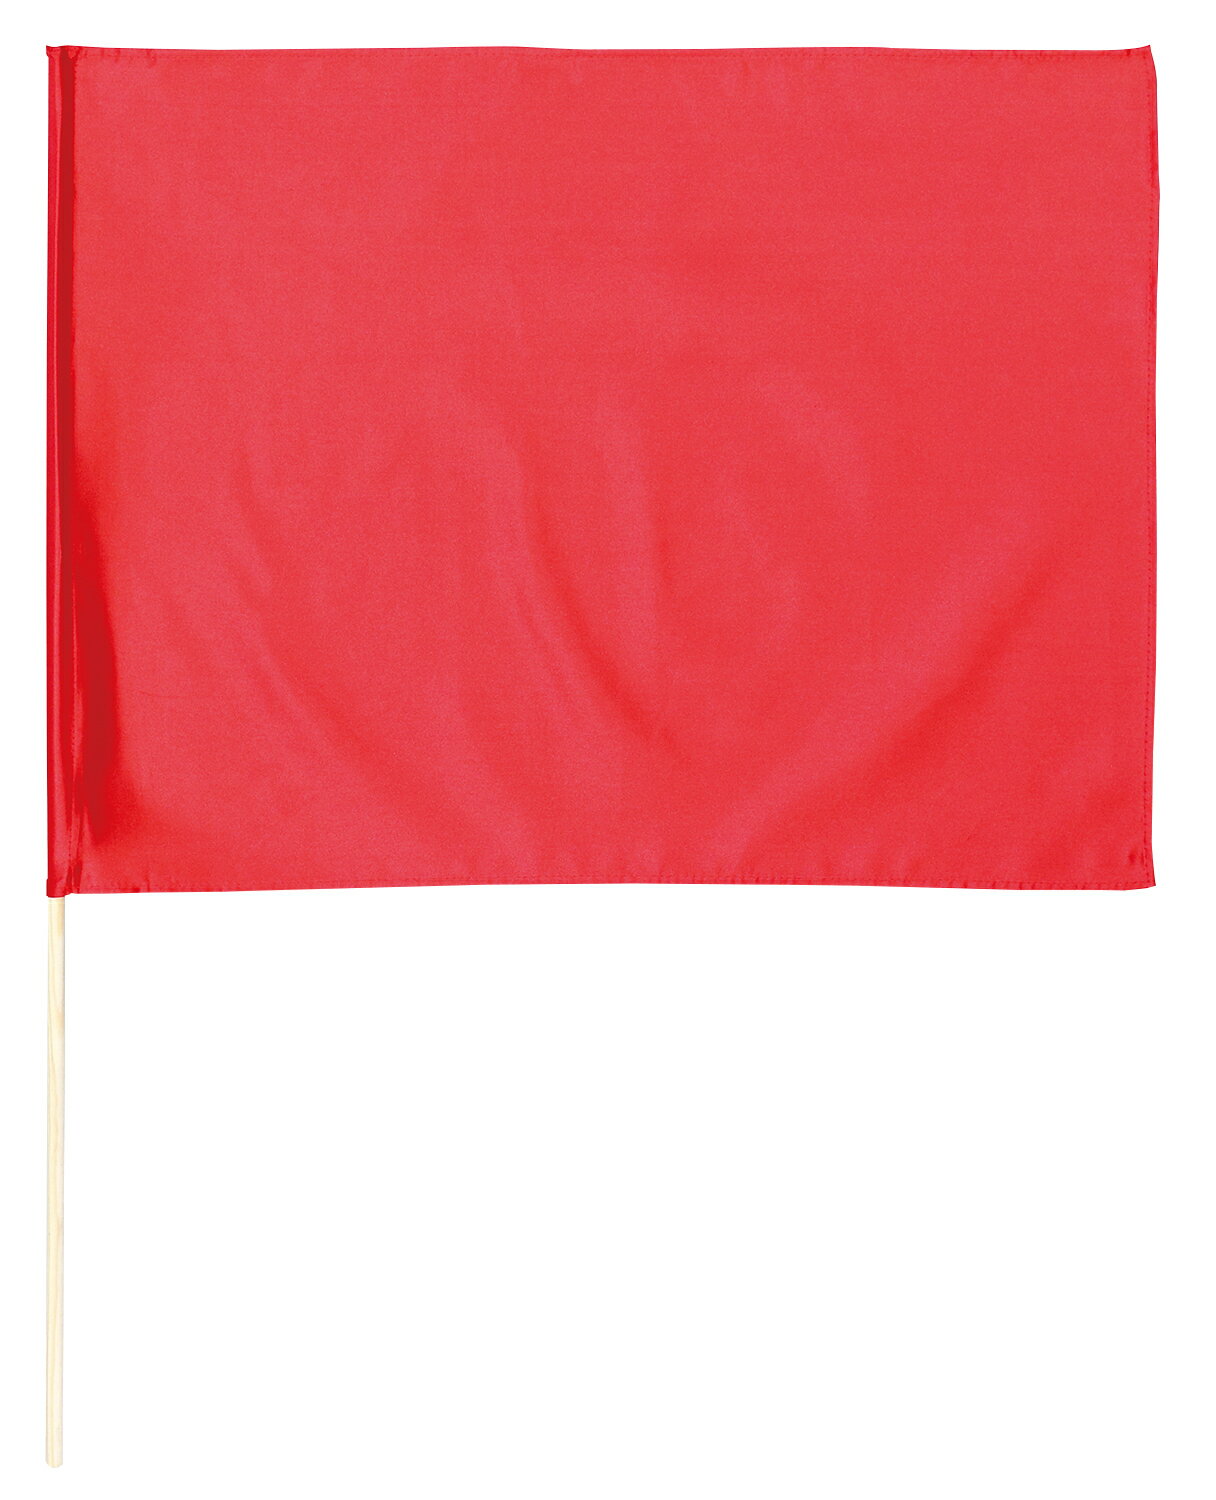 無地色旗 サテン大旗 メタリックレッド(14432) 運動会向け 44×59cm 棒付き 素材ポリエステルサテン